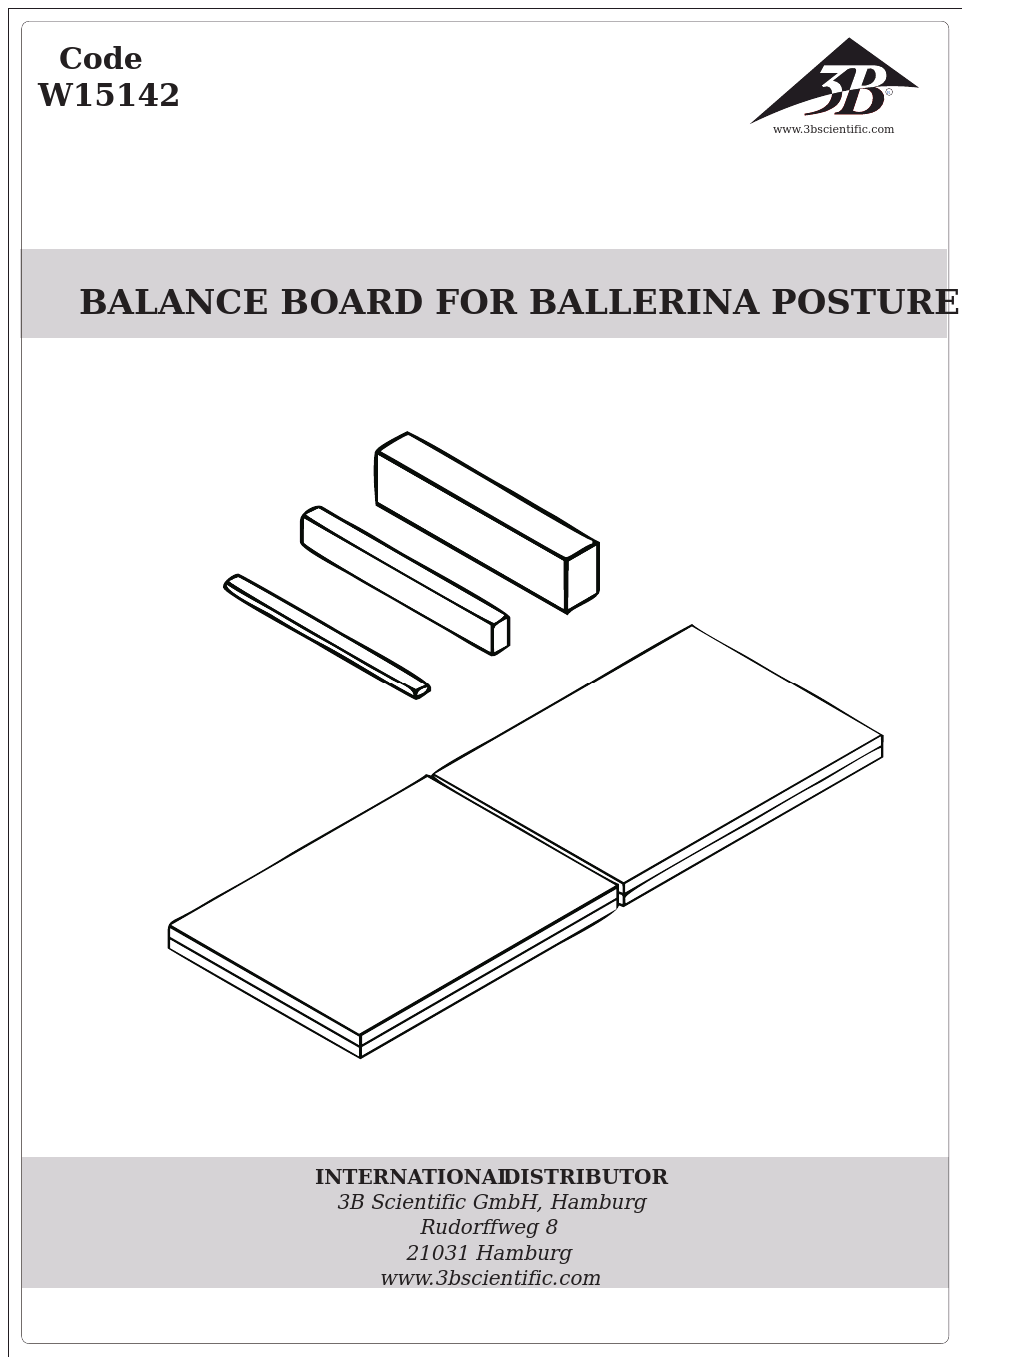 Balance Board for Ballerina Posture